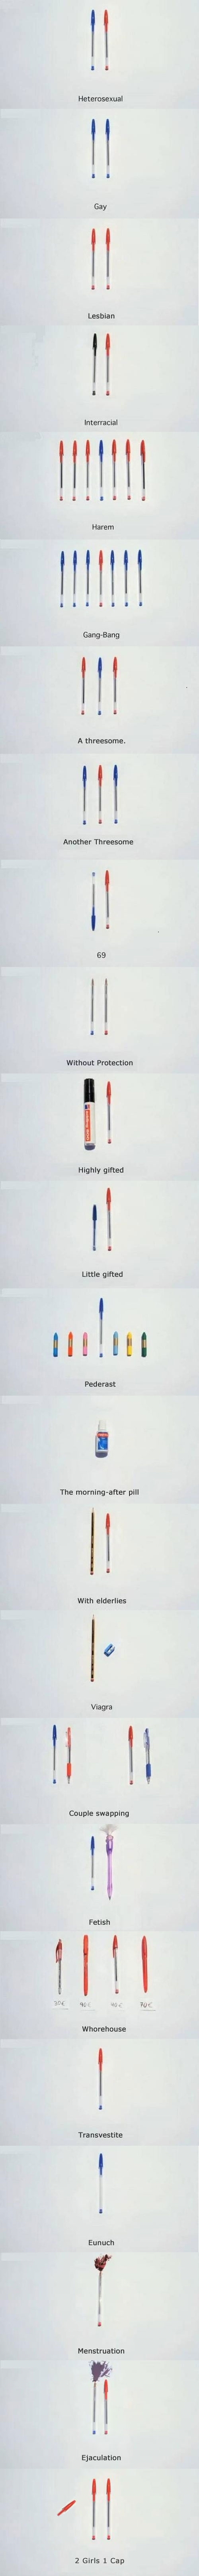 Life described by pens